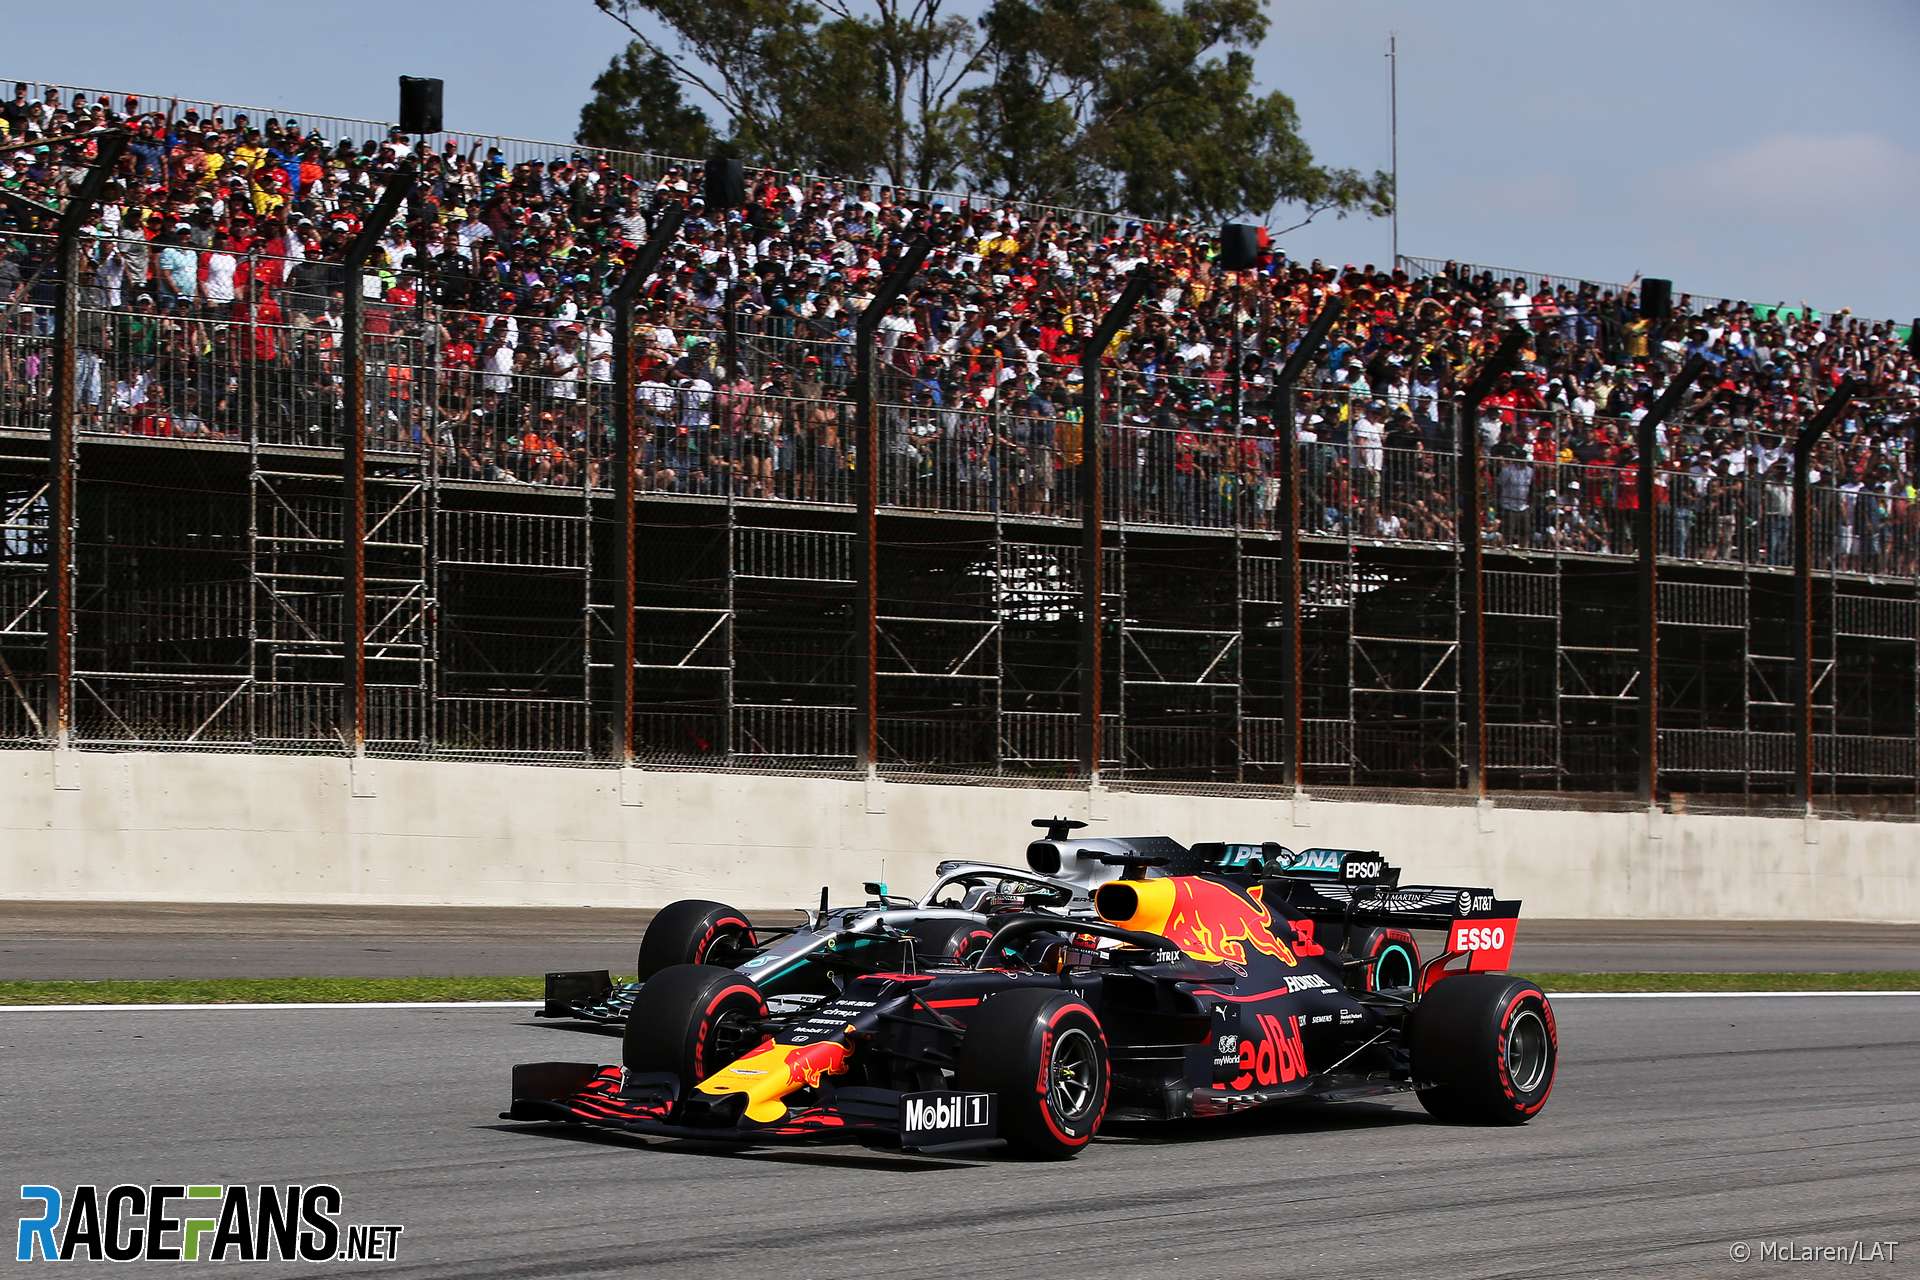 Max Verstappen, Lewis Hamilton, Interlagos, 2019